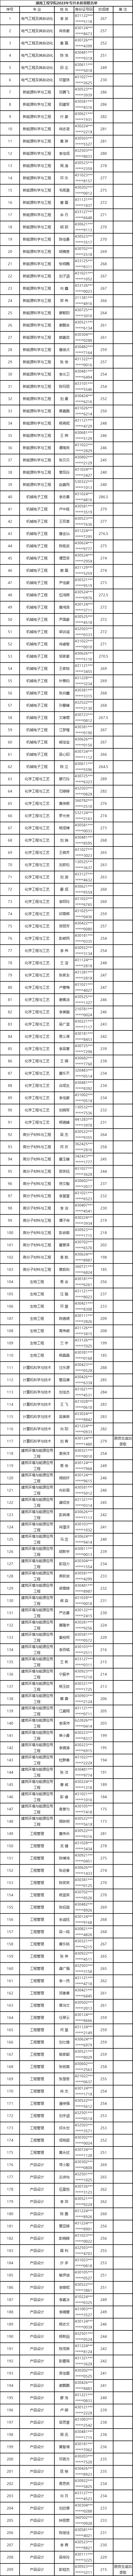 2023年湖南工程学院专升本拟录取名单公示(不含免试生）